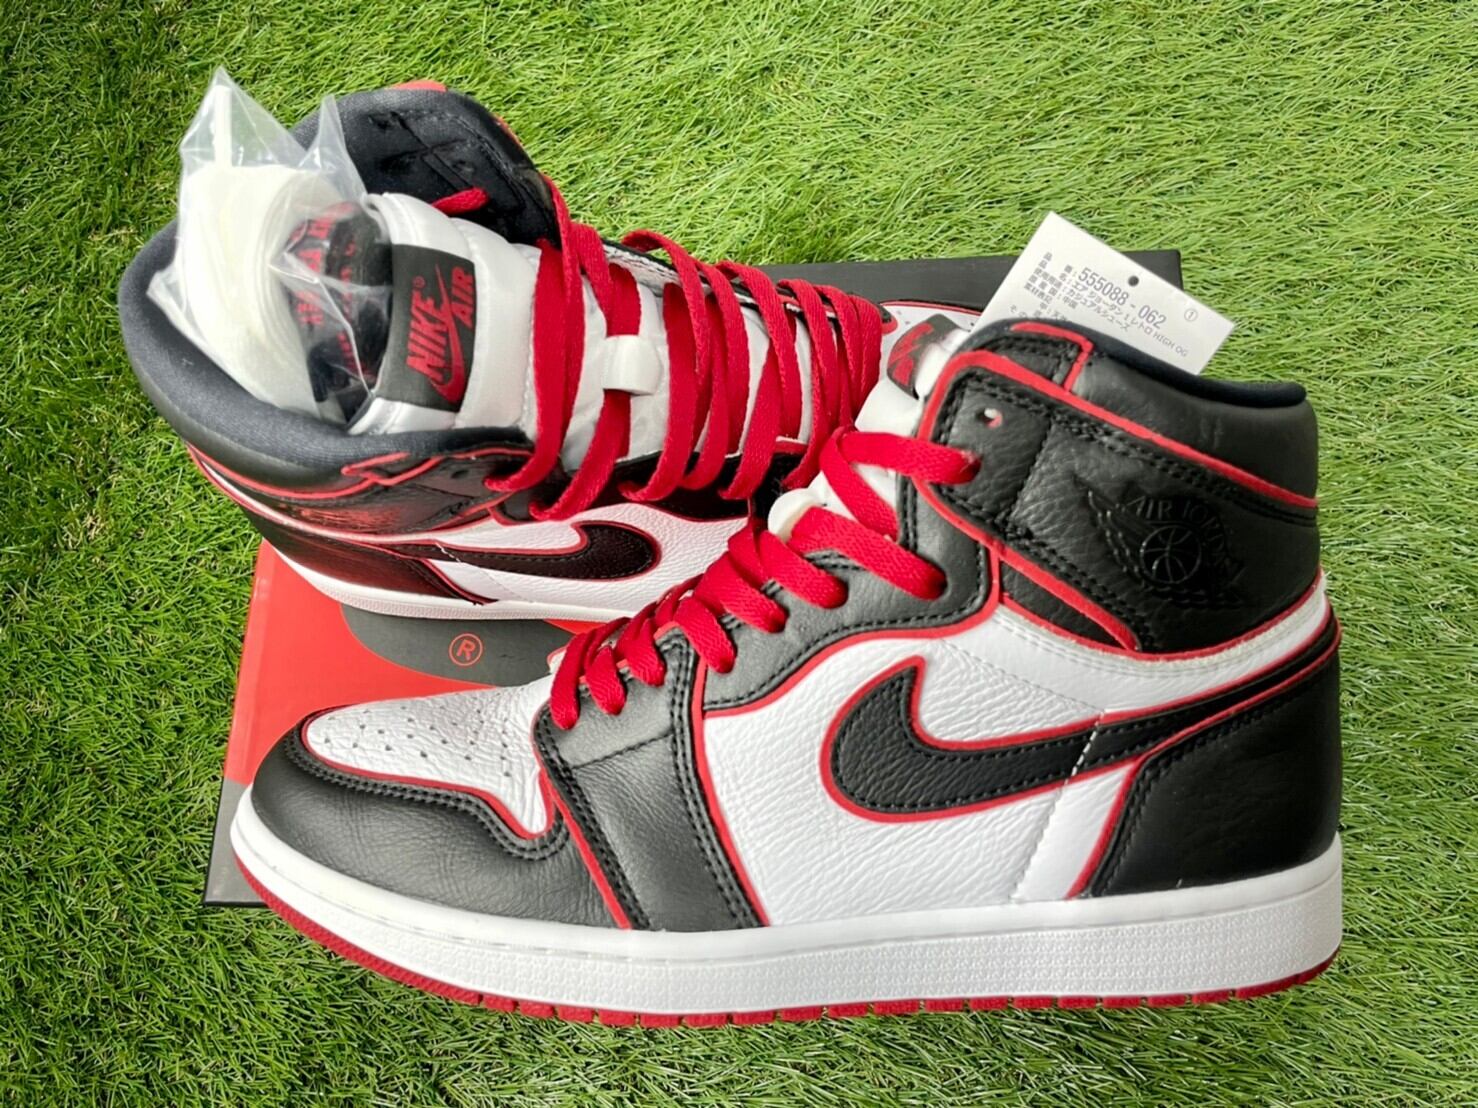 Nike air Jordan 1 high og bloodline 27cm